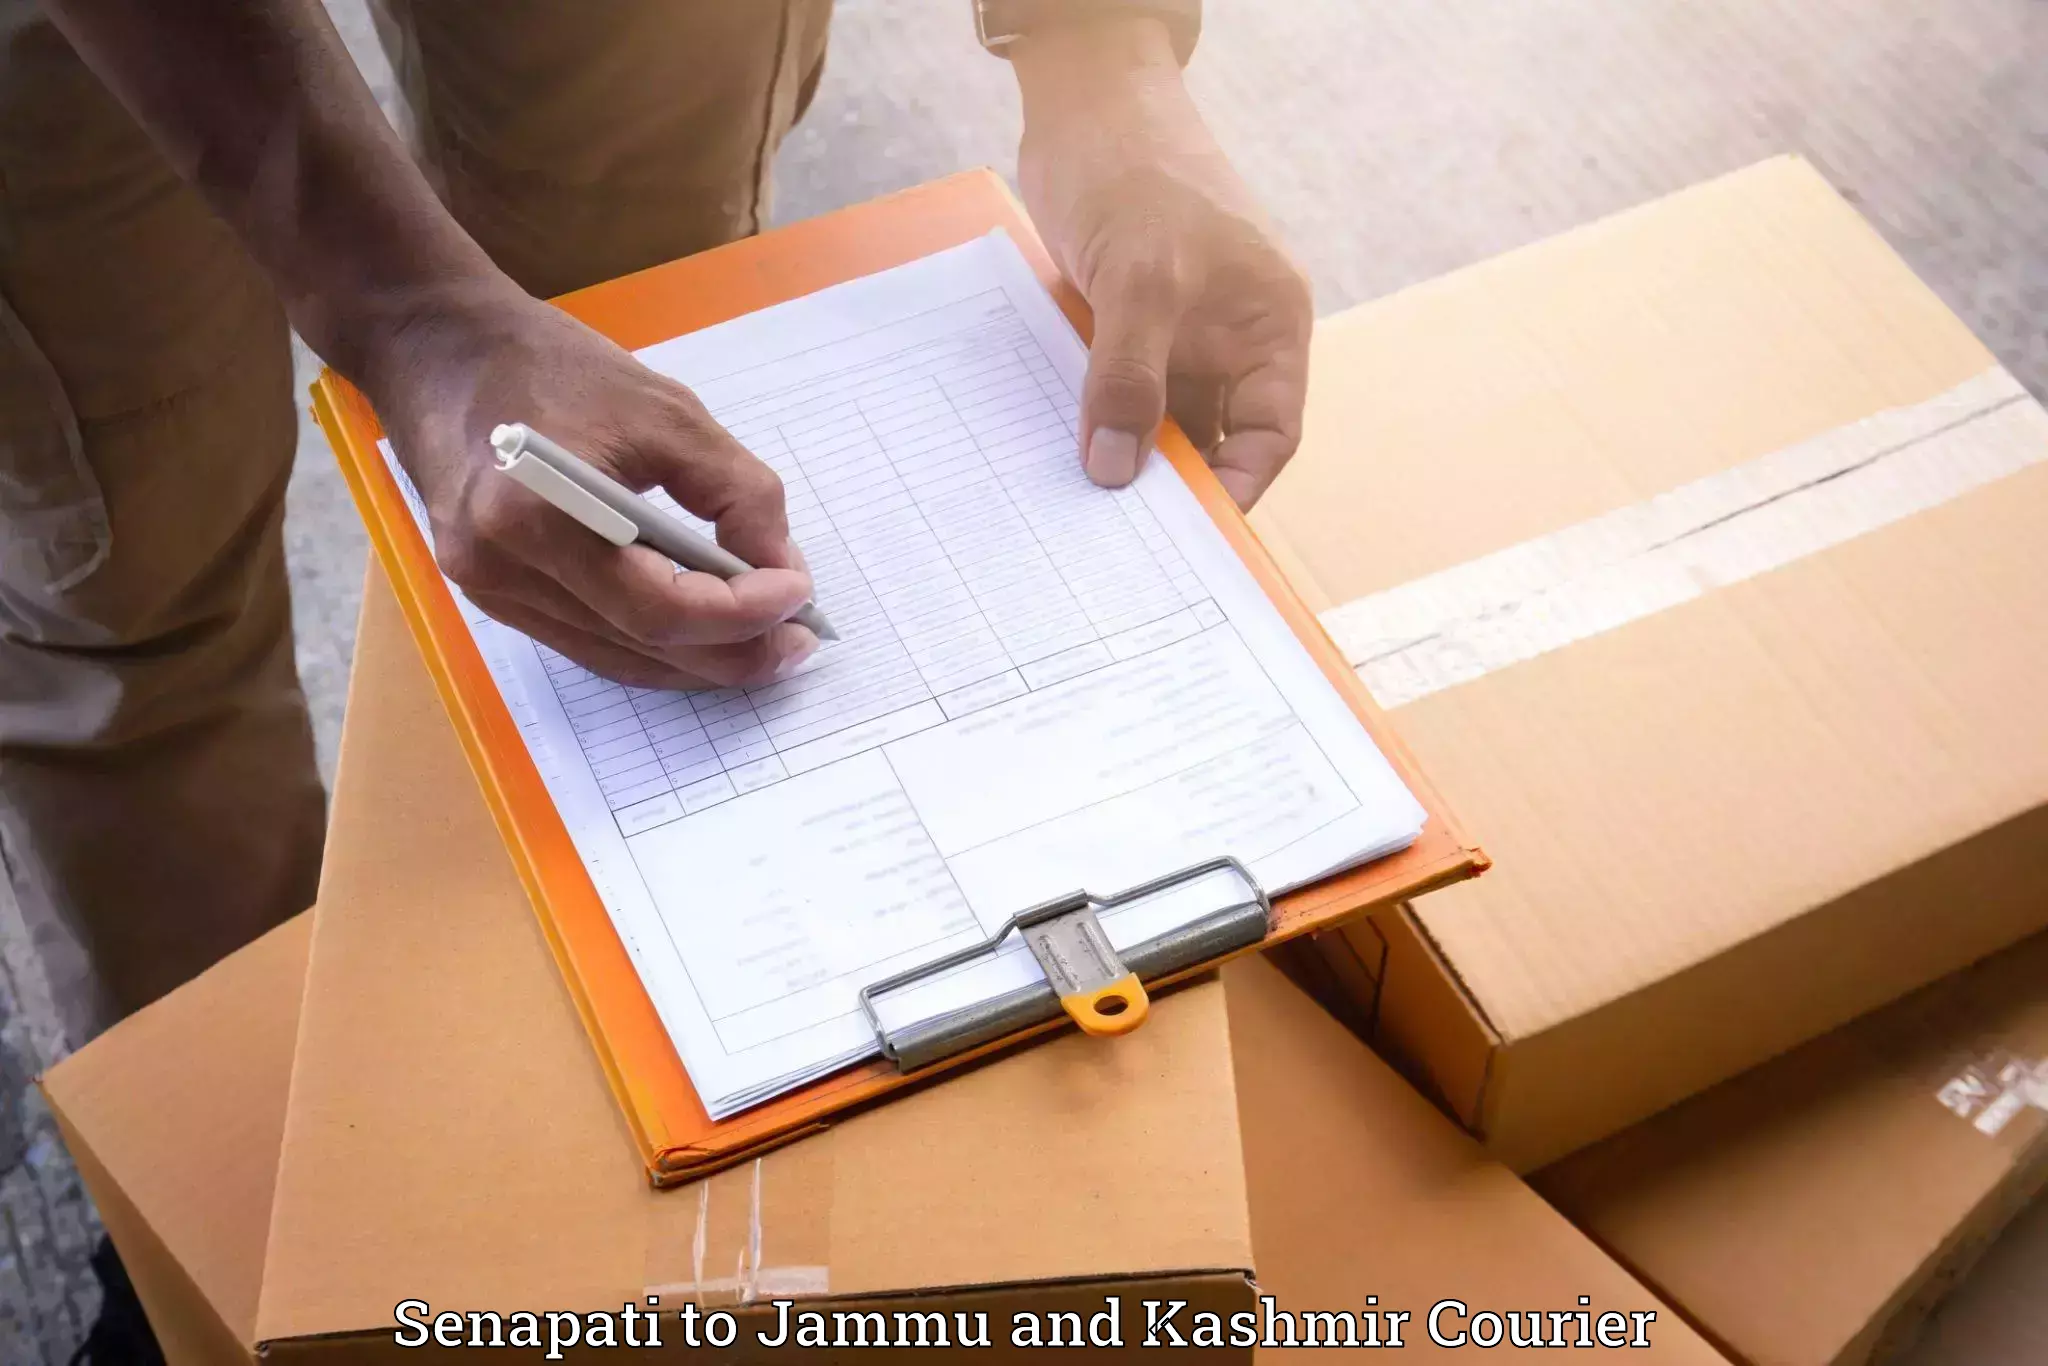 Quality household movers Senapati to Srinagar Kashmir